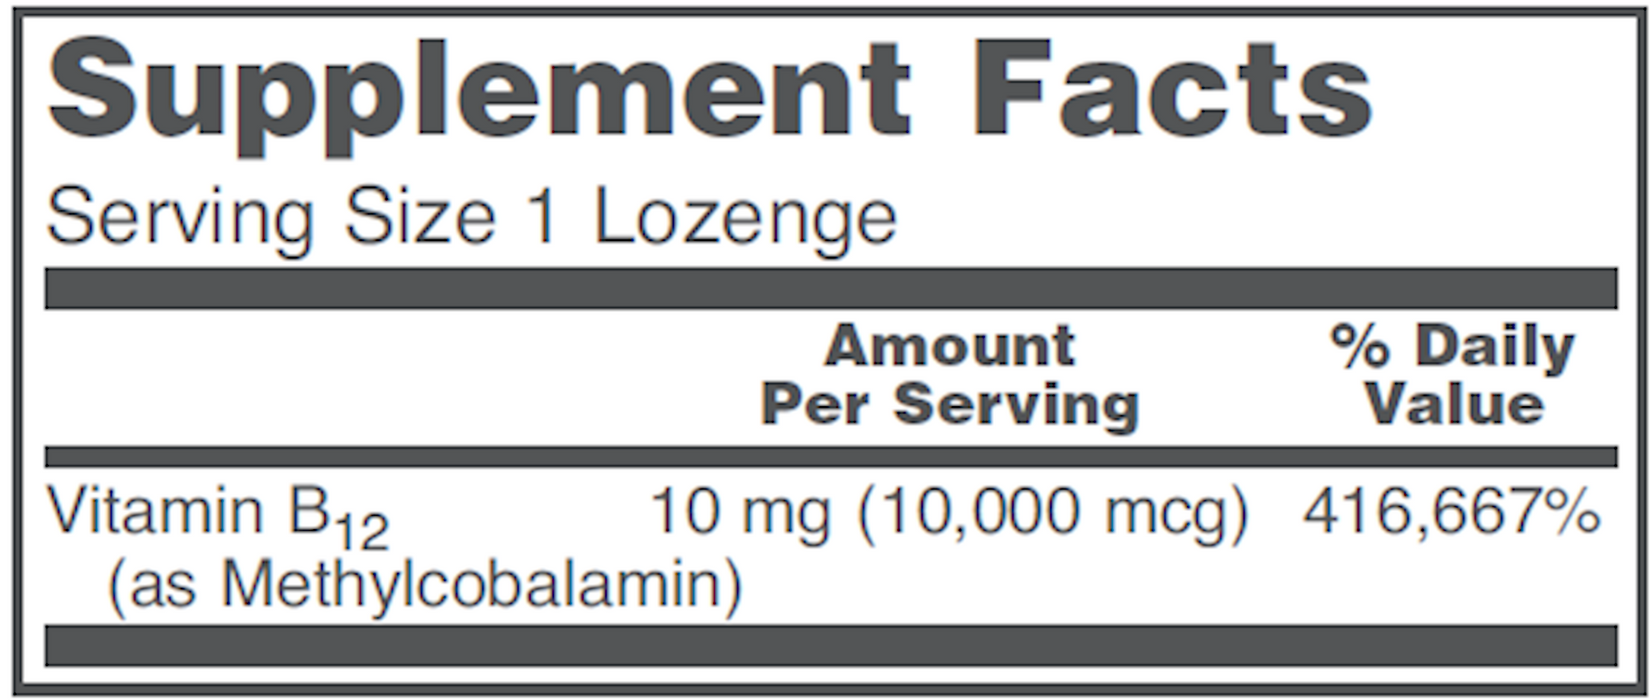 Protocol For Life Balance Methyl B12 10,000 mcg 60 lozenges